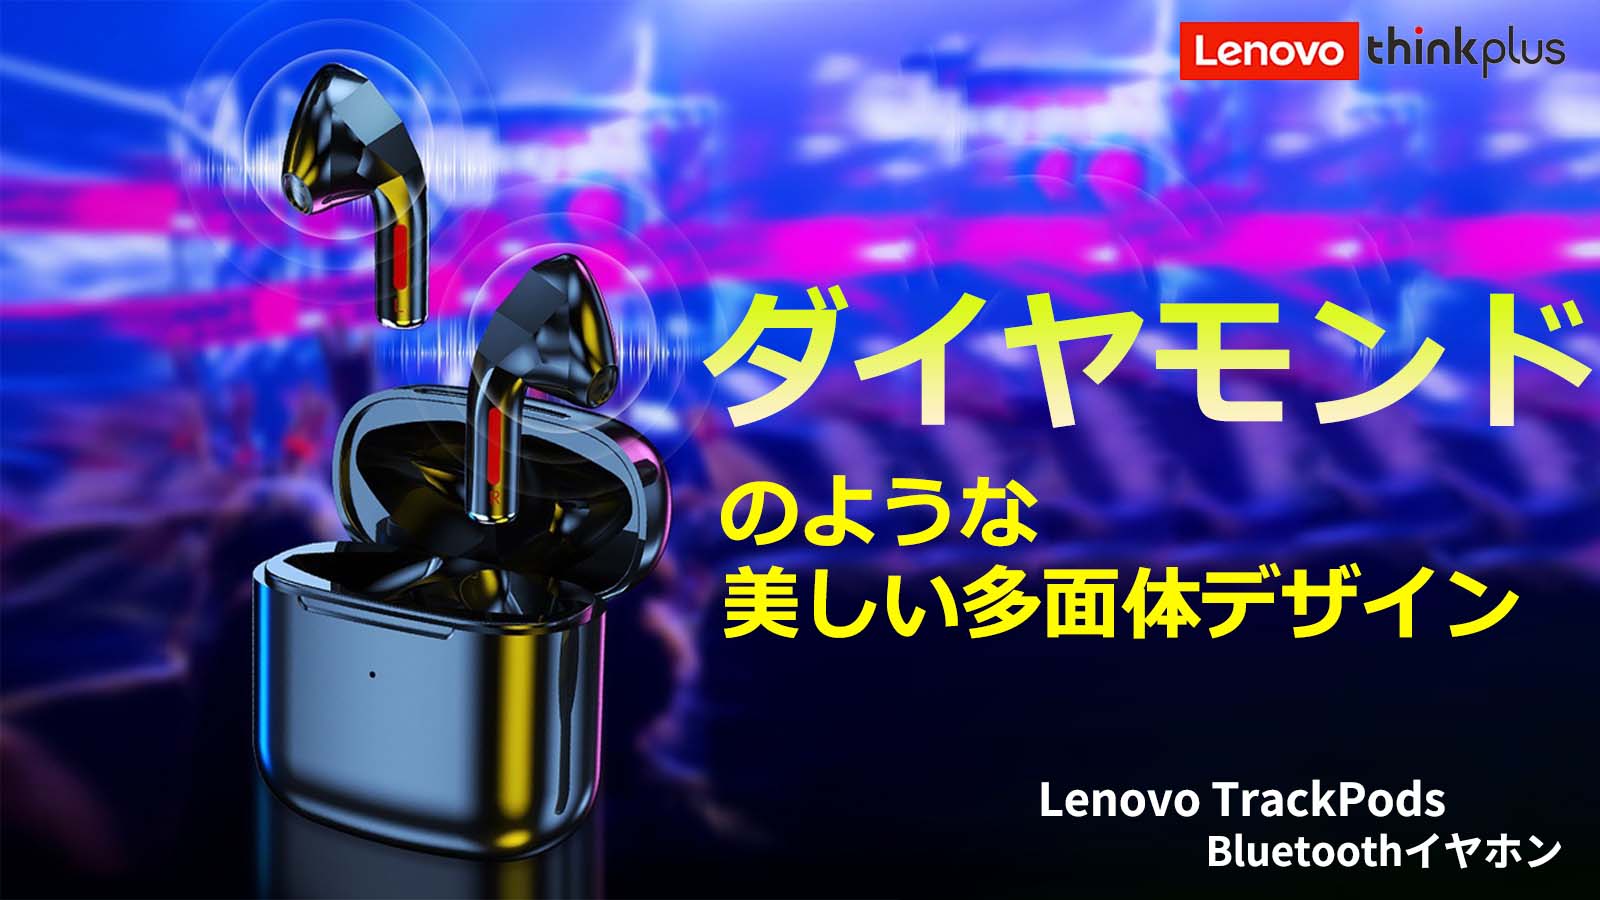 【日本発売開始！】Lenovo TrackPods 小型 Bluetooth ワイヤレス イヤホン 限定 日本パッケージ版 iPhone Android IPX4 防水 Siri対応 マイク 送料無料692811